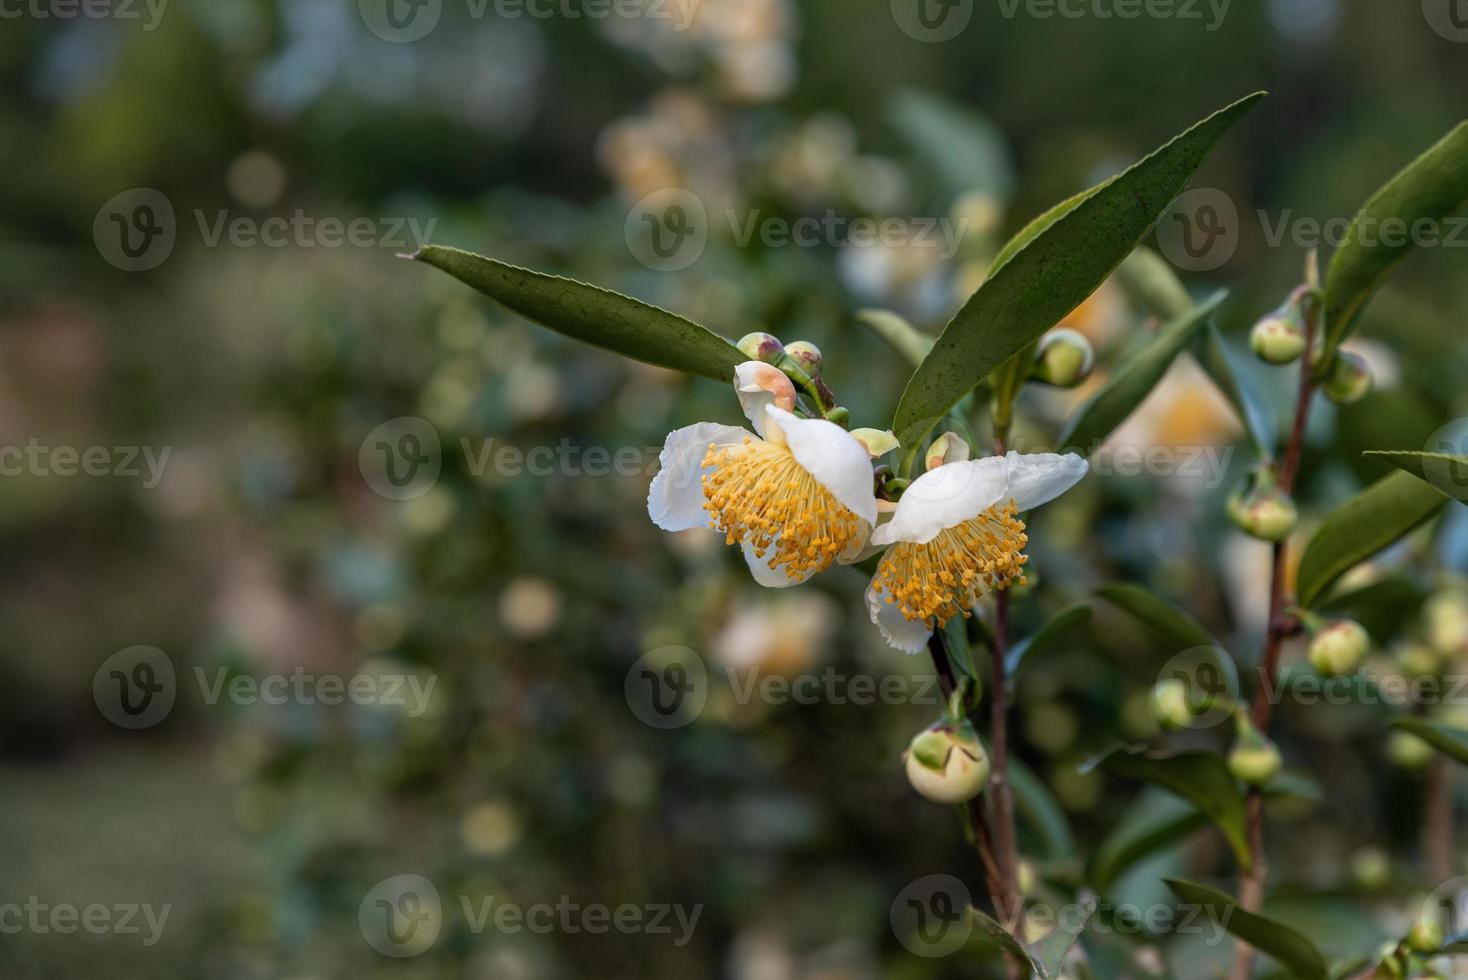 sous le soleil, des fleurs de thé aux pétales blancs et aux noyaux de fleurs jaunes se trouvent dans la forêt de thé sauvage photo